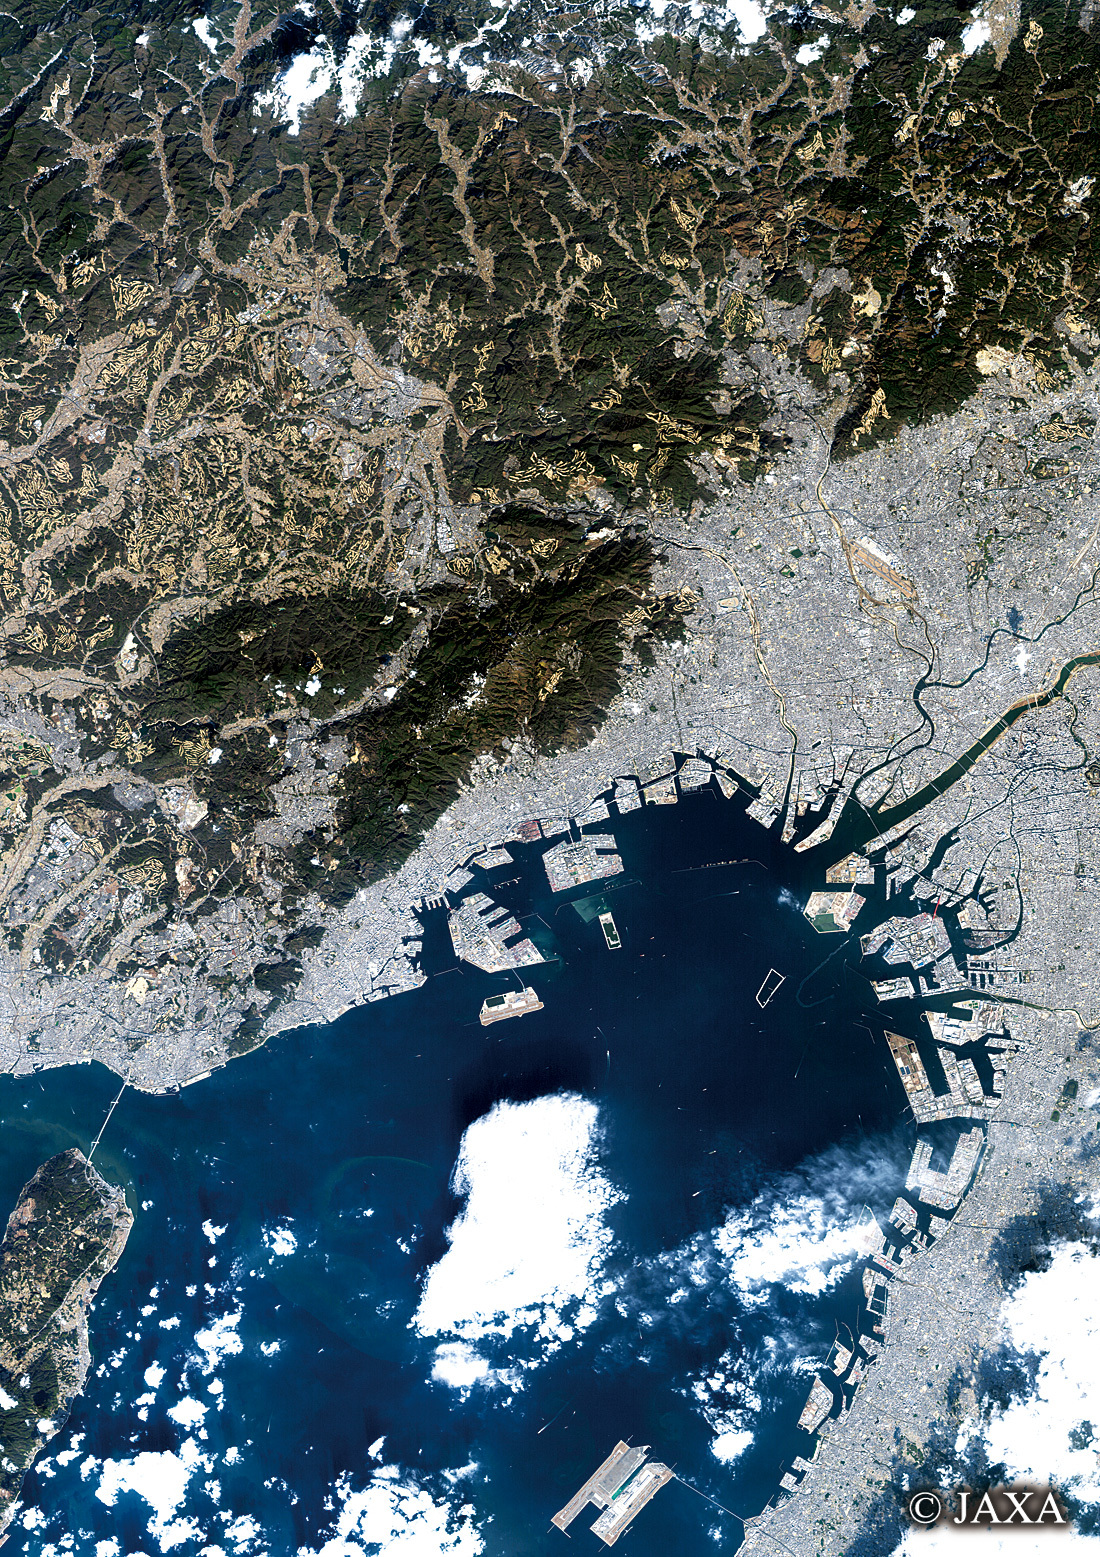 だいちから見た日本の都市 神戸市と大阪湾周辺辺:衛星画像